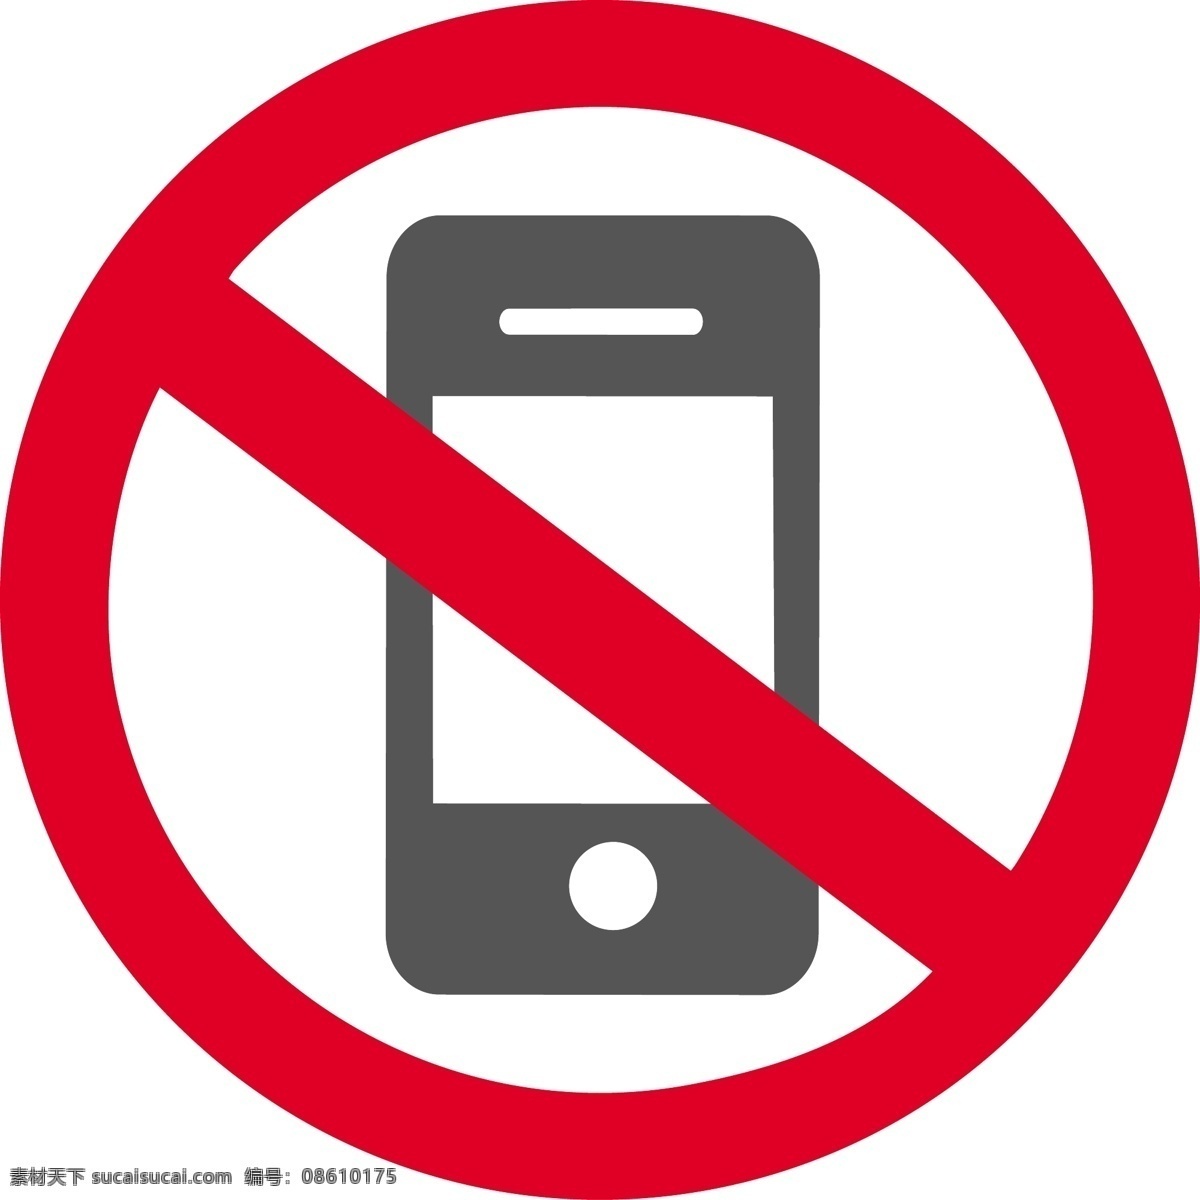 禁止通话 禁止 手机 矢量 禁止图标 公共标识标志 标识标志图标 图标 标志 标签 logo 小图标